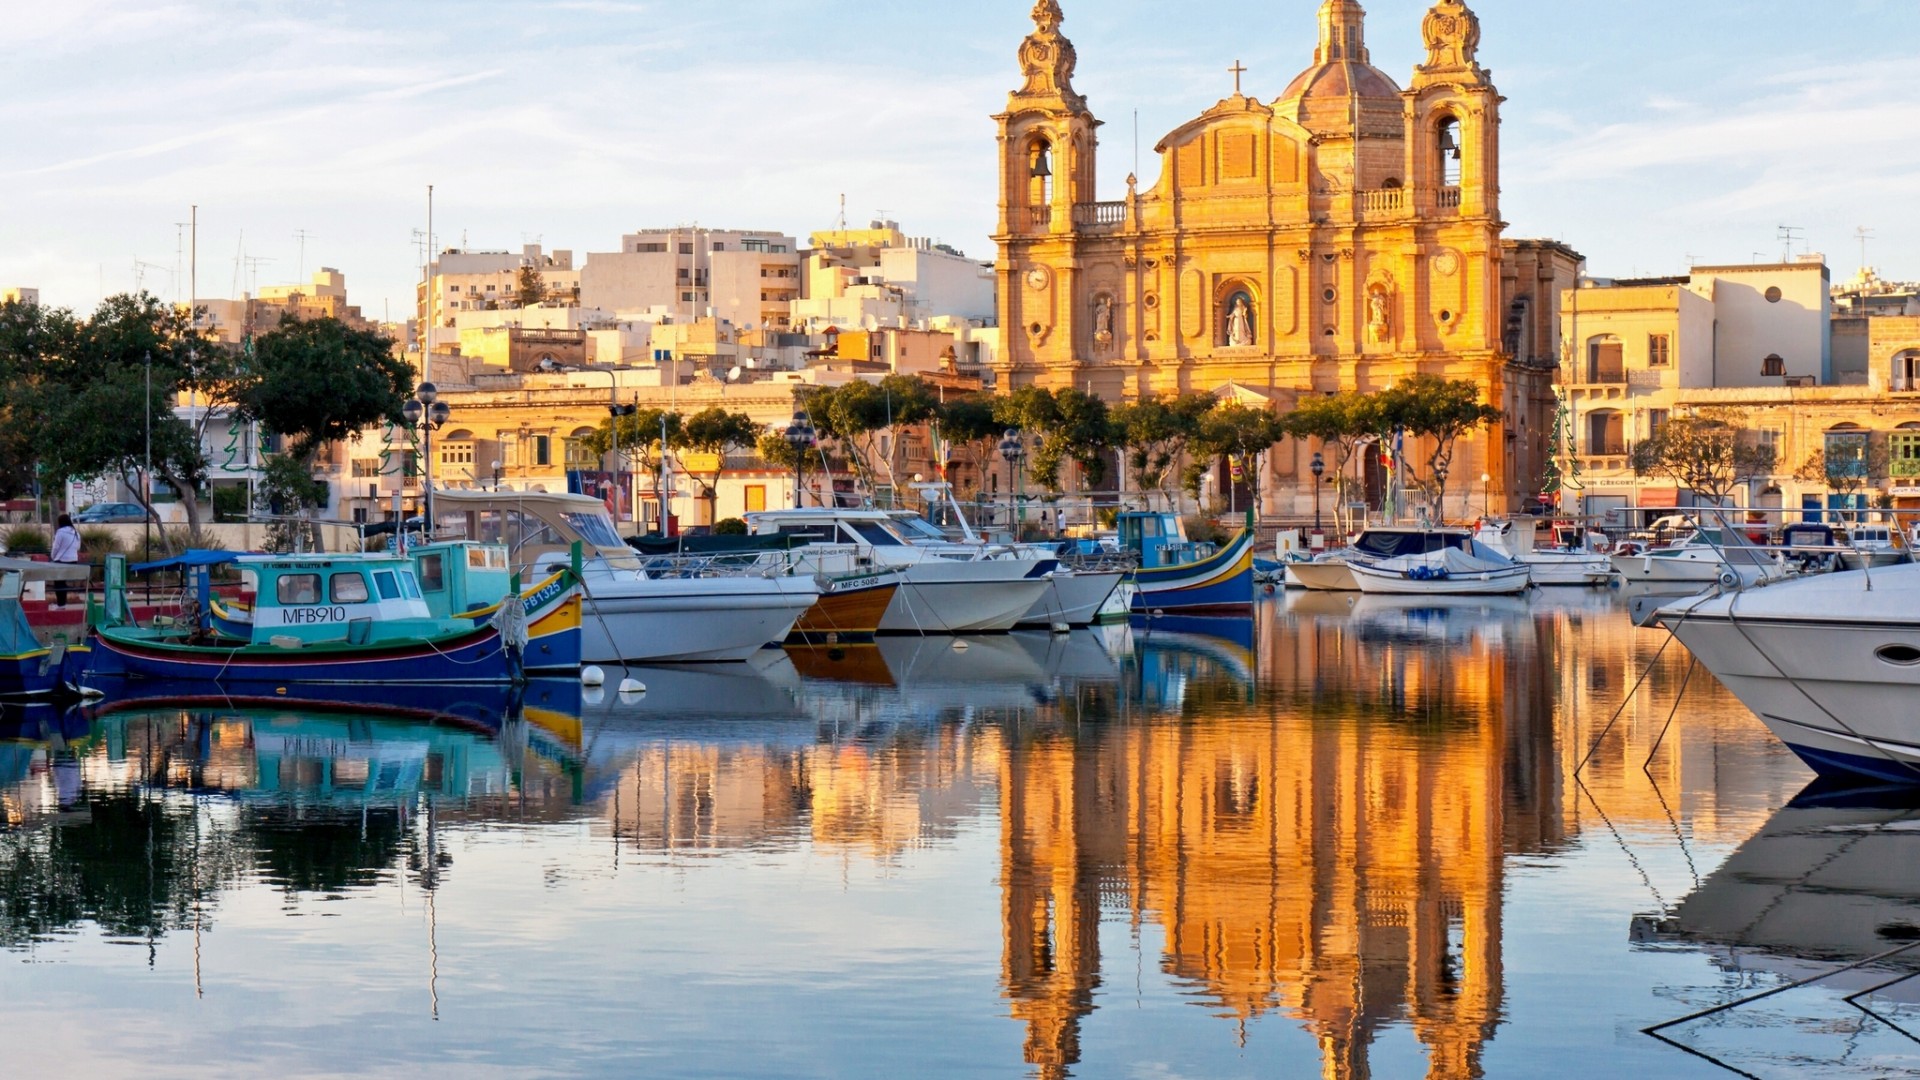 Andare a vivere a Malta